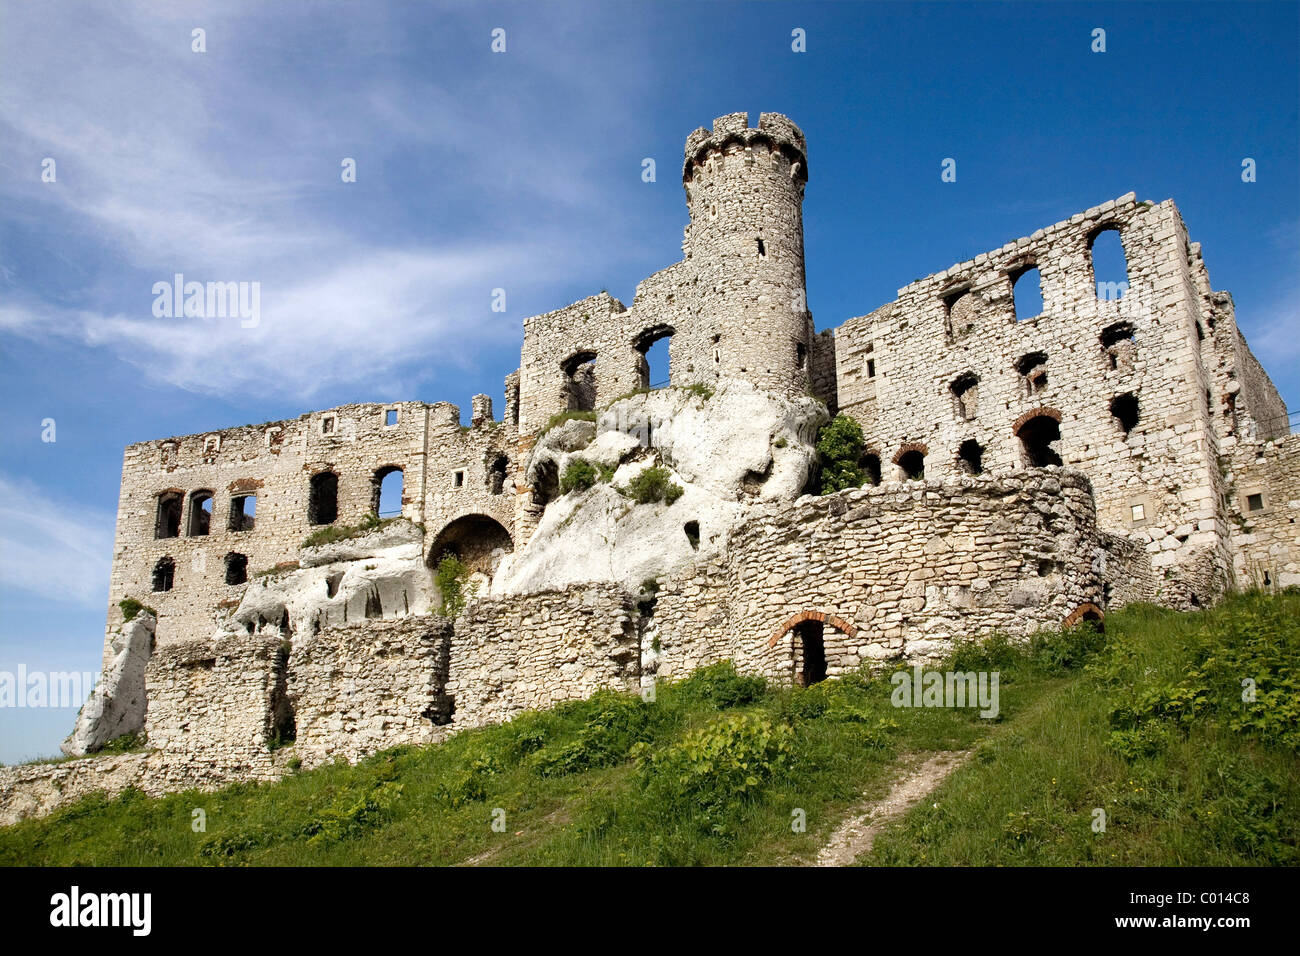 Dans les ruines du château d'Ogrodzieniec, Pologne, Europe Banque D'Images